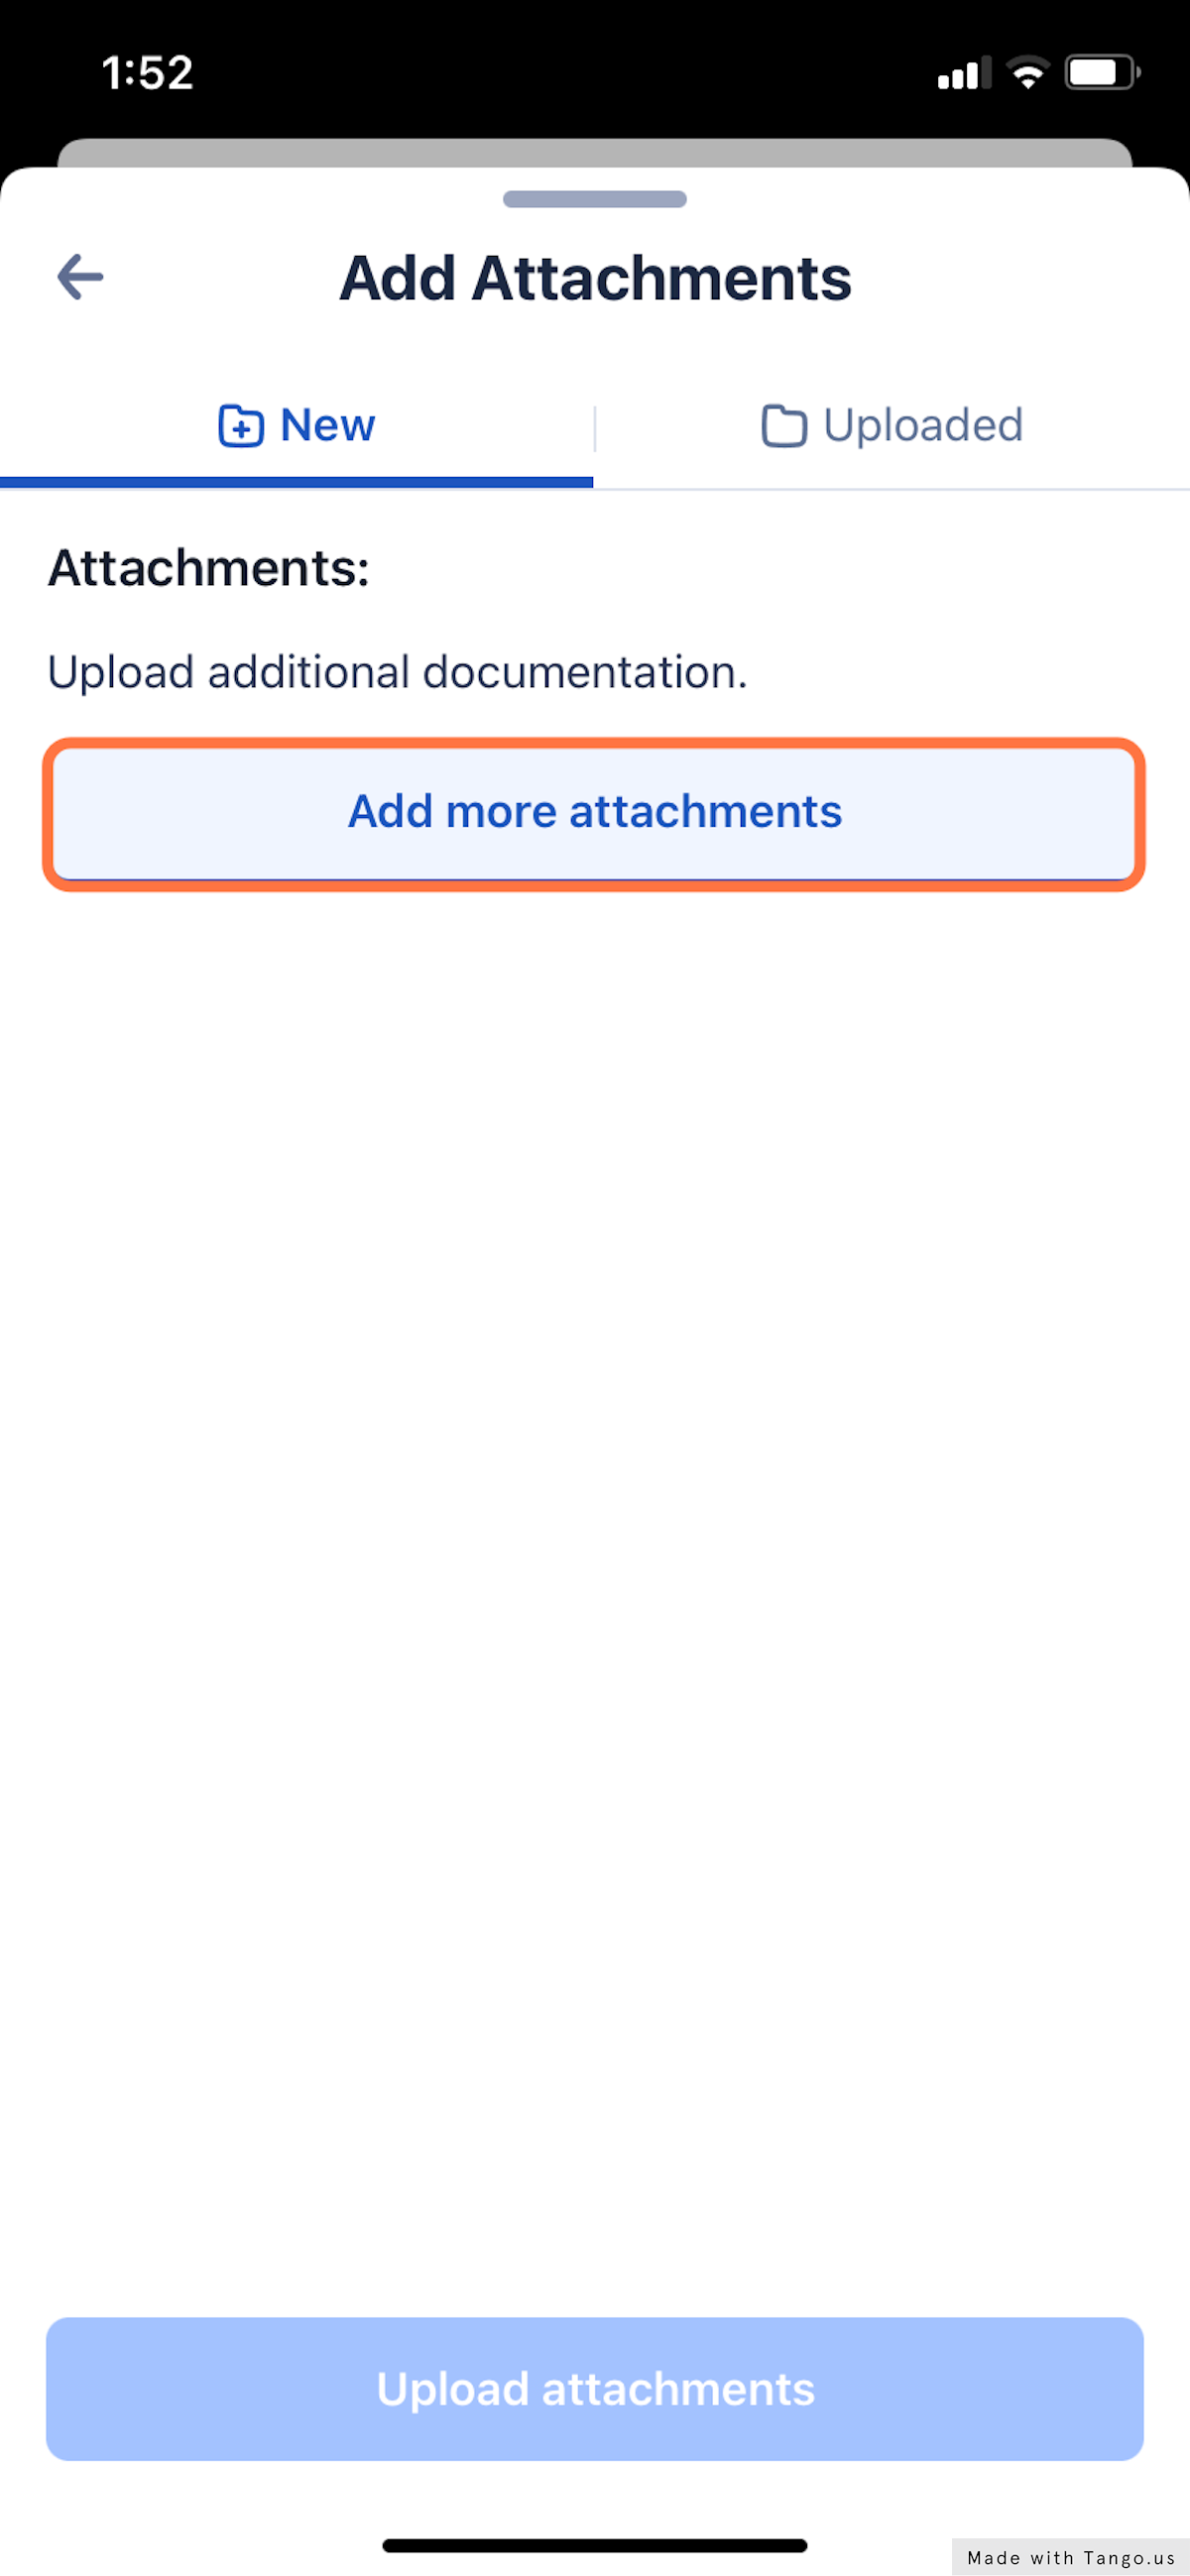 Select the 'Add more attachments' button.